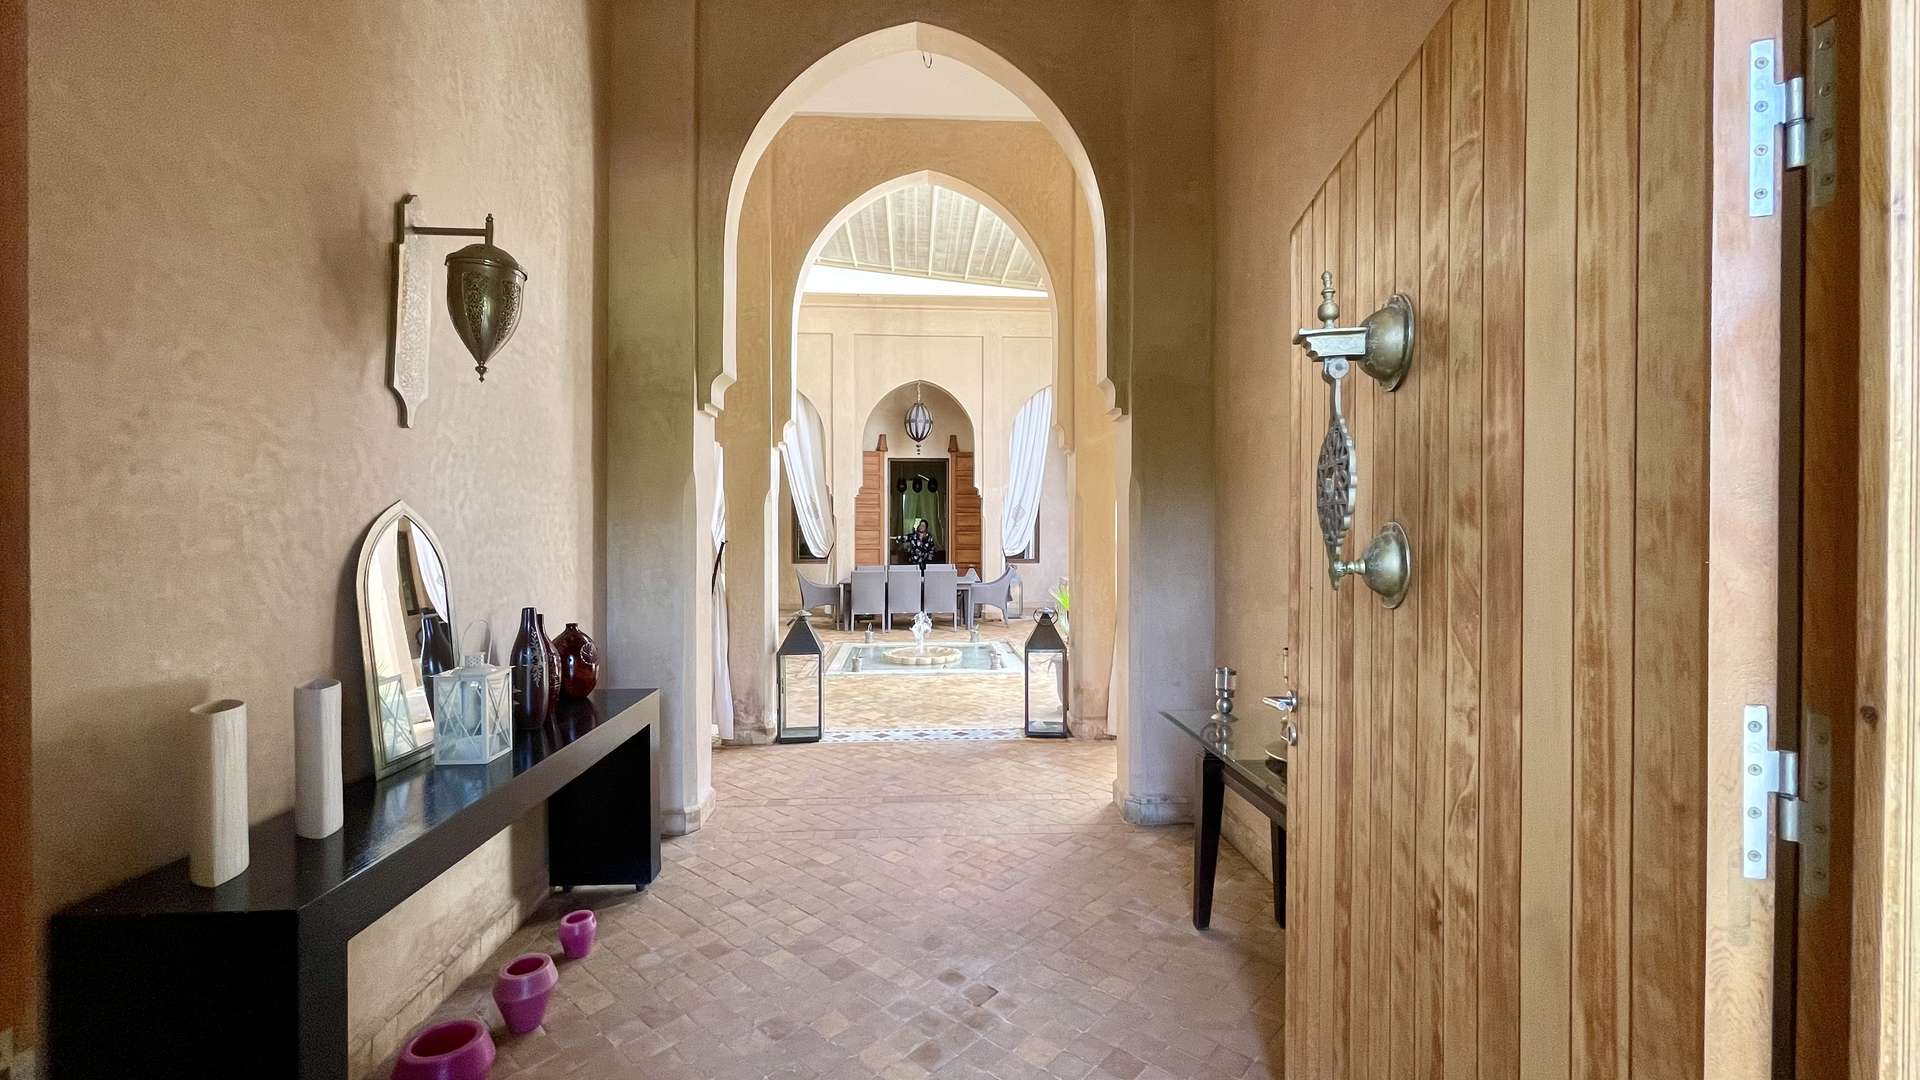 Vente,Villa,Somptueuse Villa de style Riad de plain-pied 4 suites sur un parc de 4200M2,Marrakech,Route d'Ouarzazate